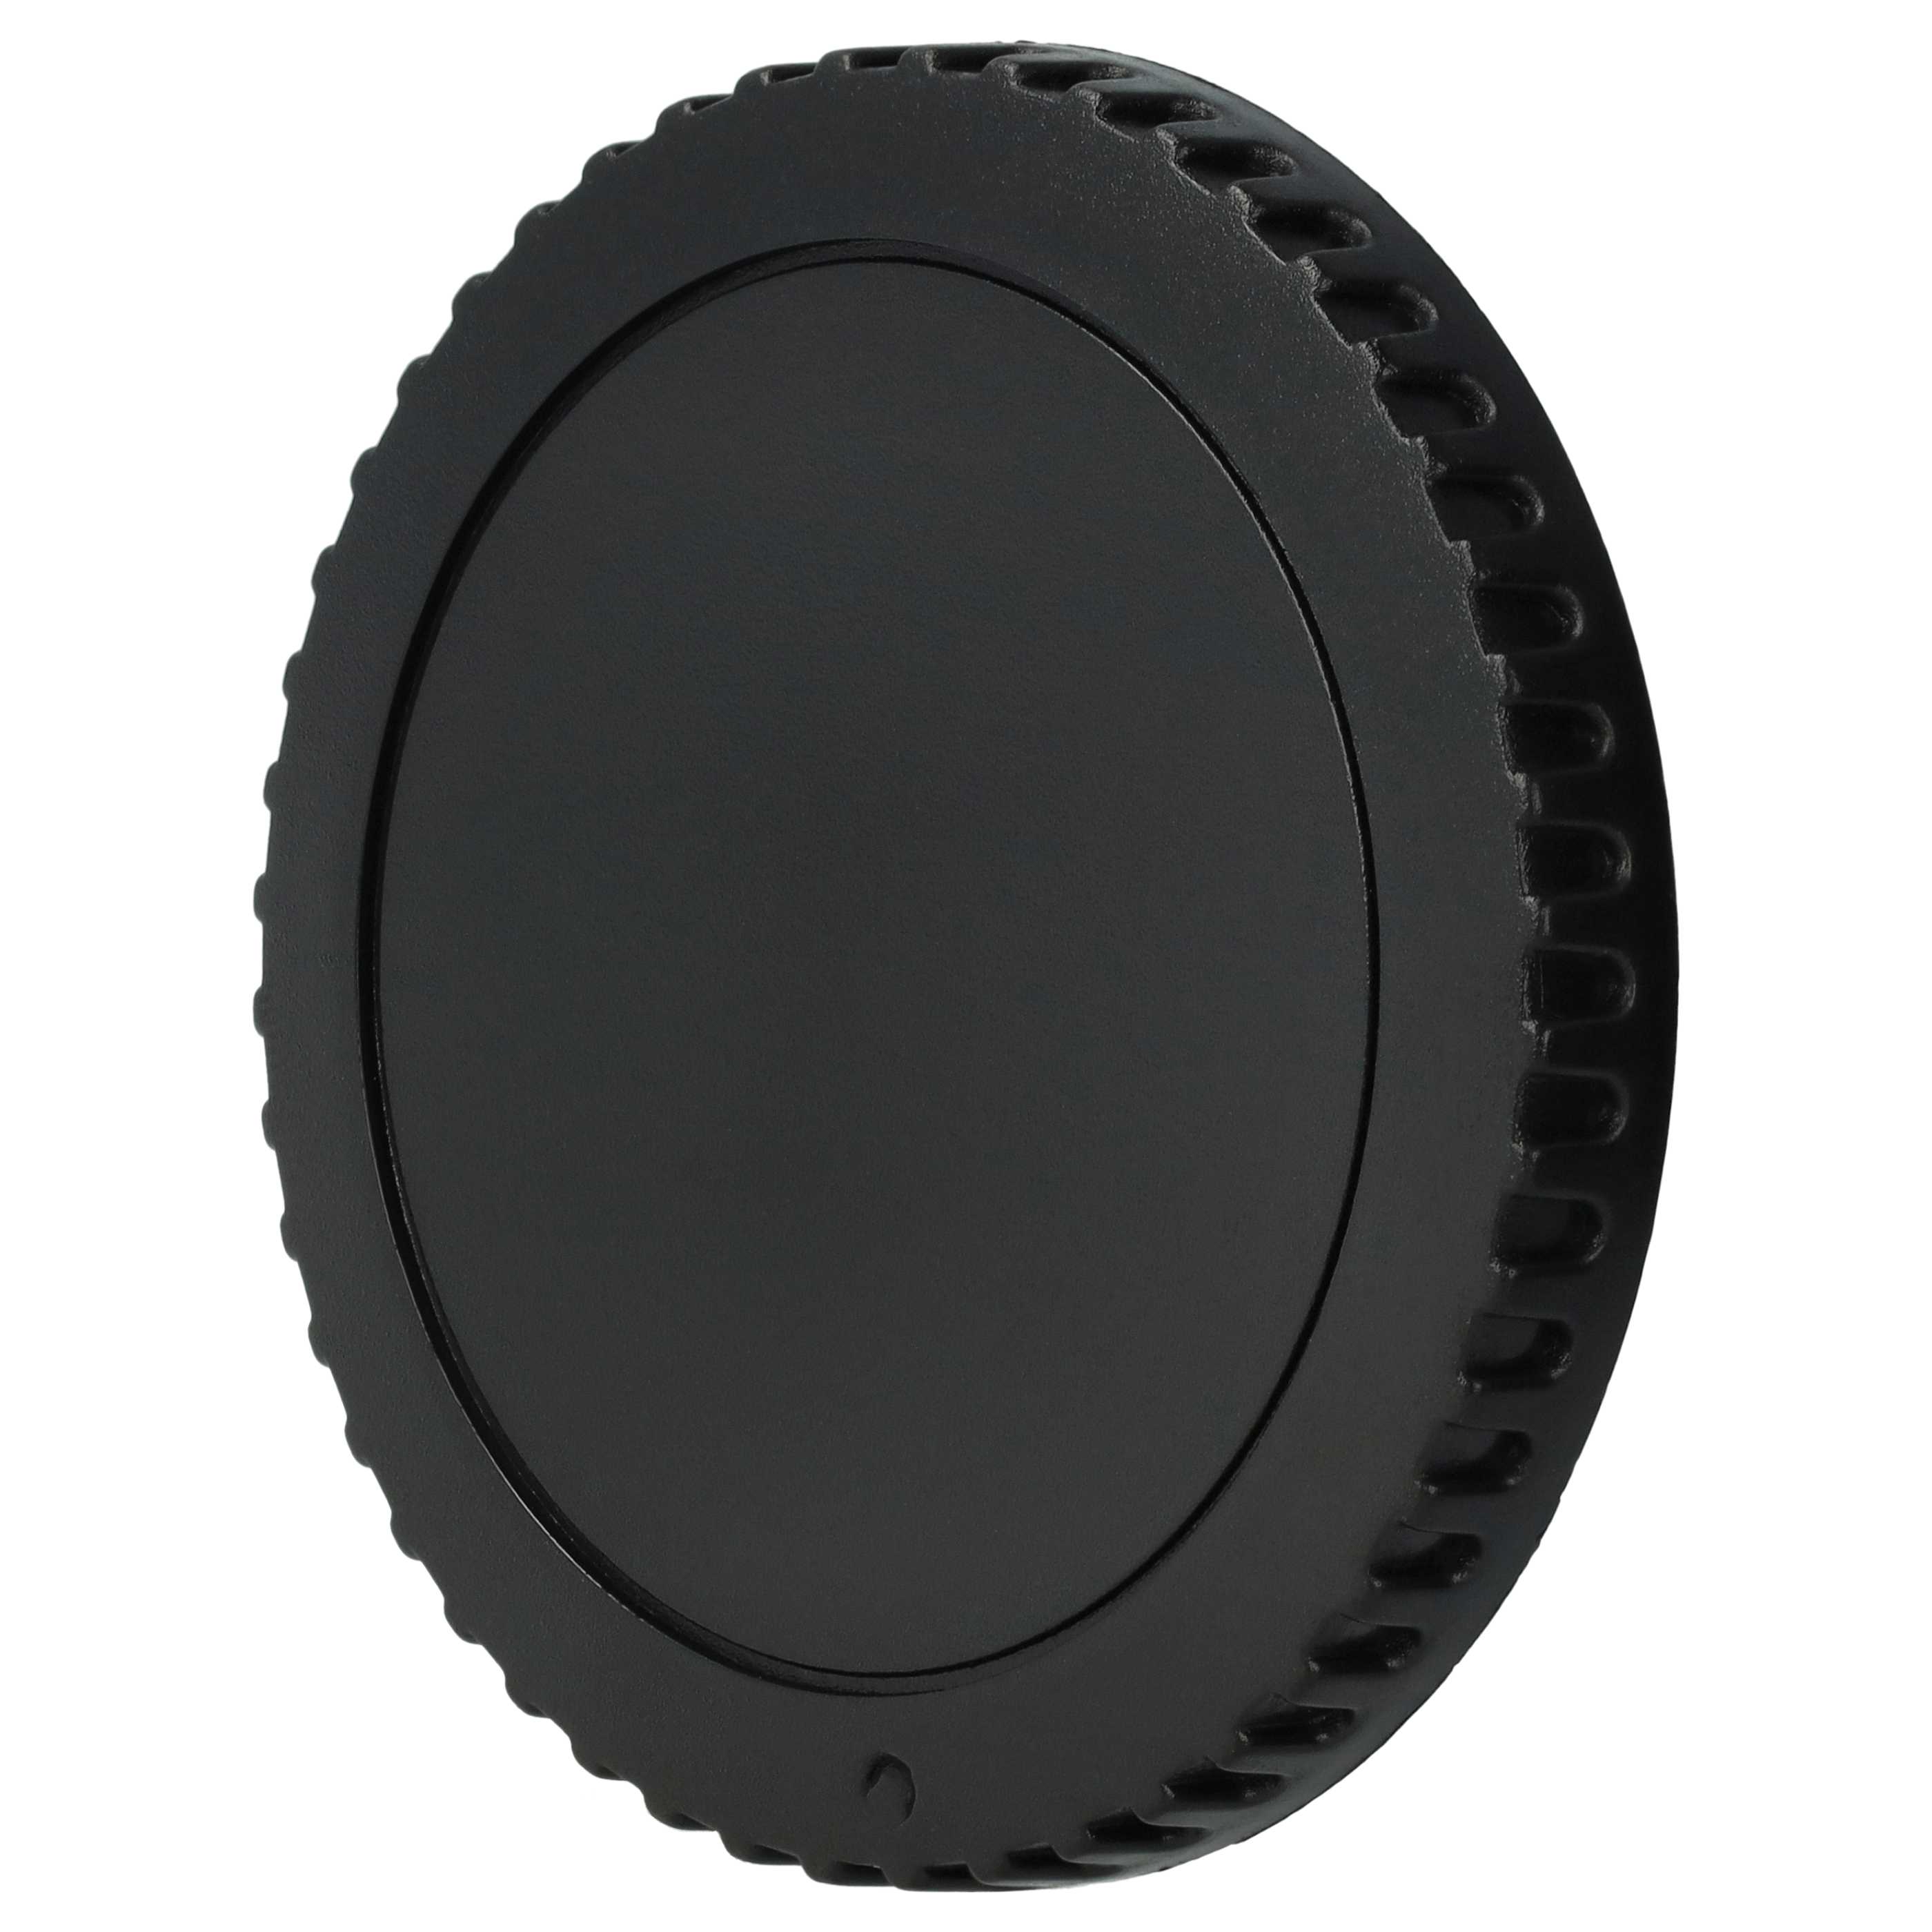 Housing Cap suitable for Canon EOS 450D Camera, DSLR - Plastic, Black